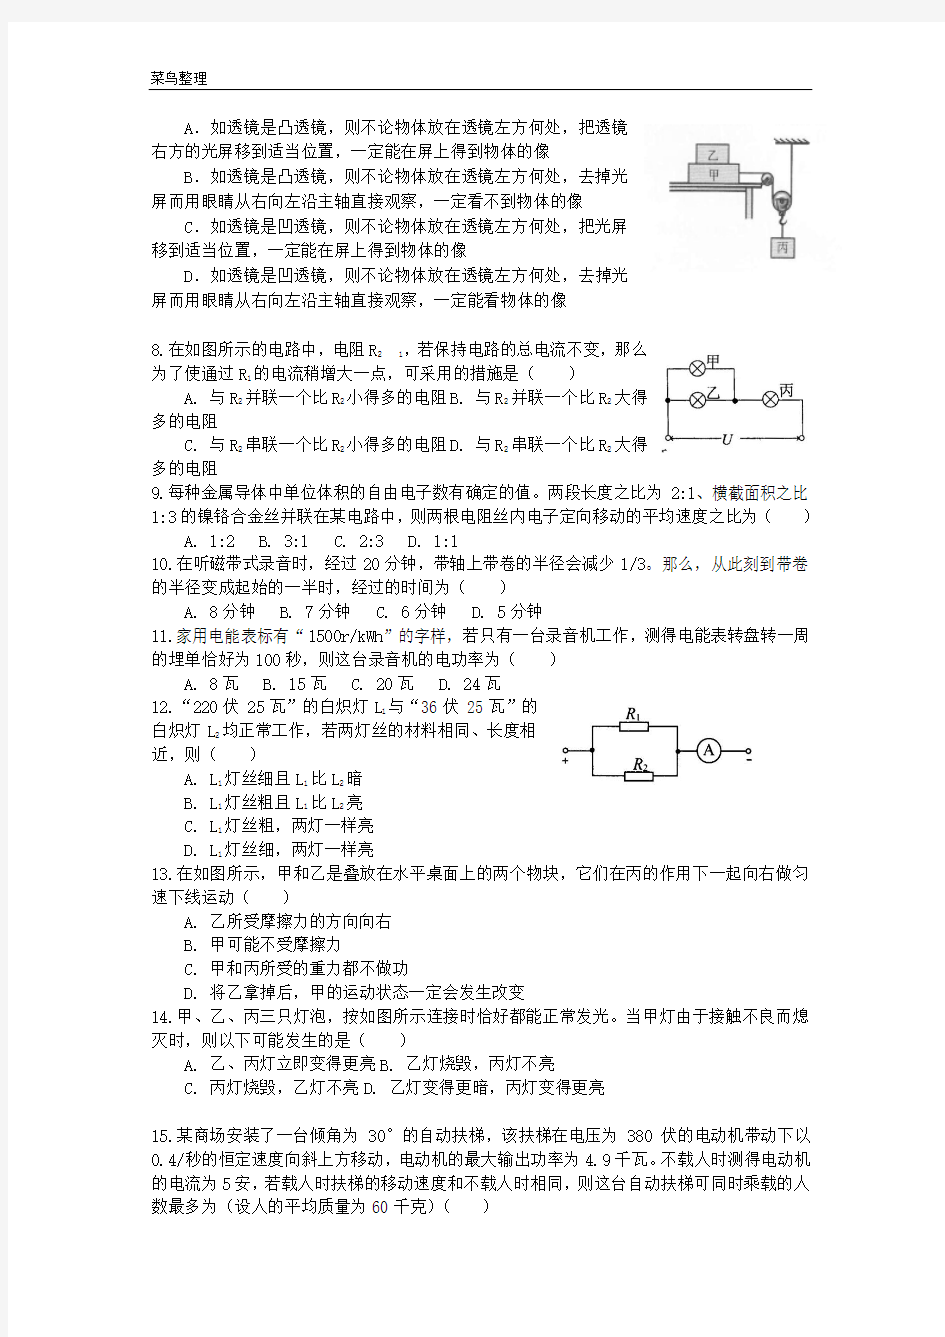 2013年上海市第二十七届初中物理竞赛(大同杯)初赛试题及答案(经典珍藏版)